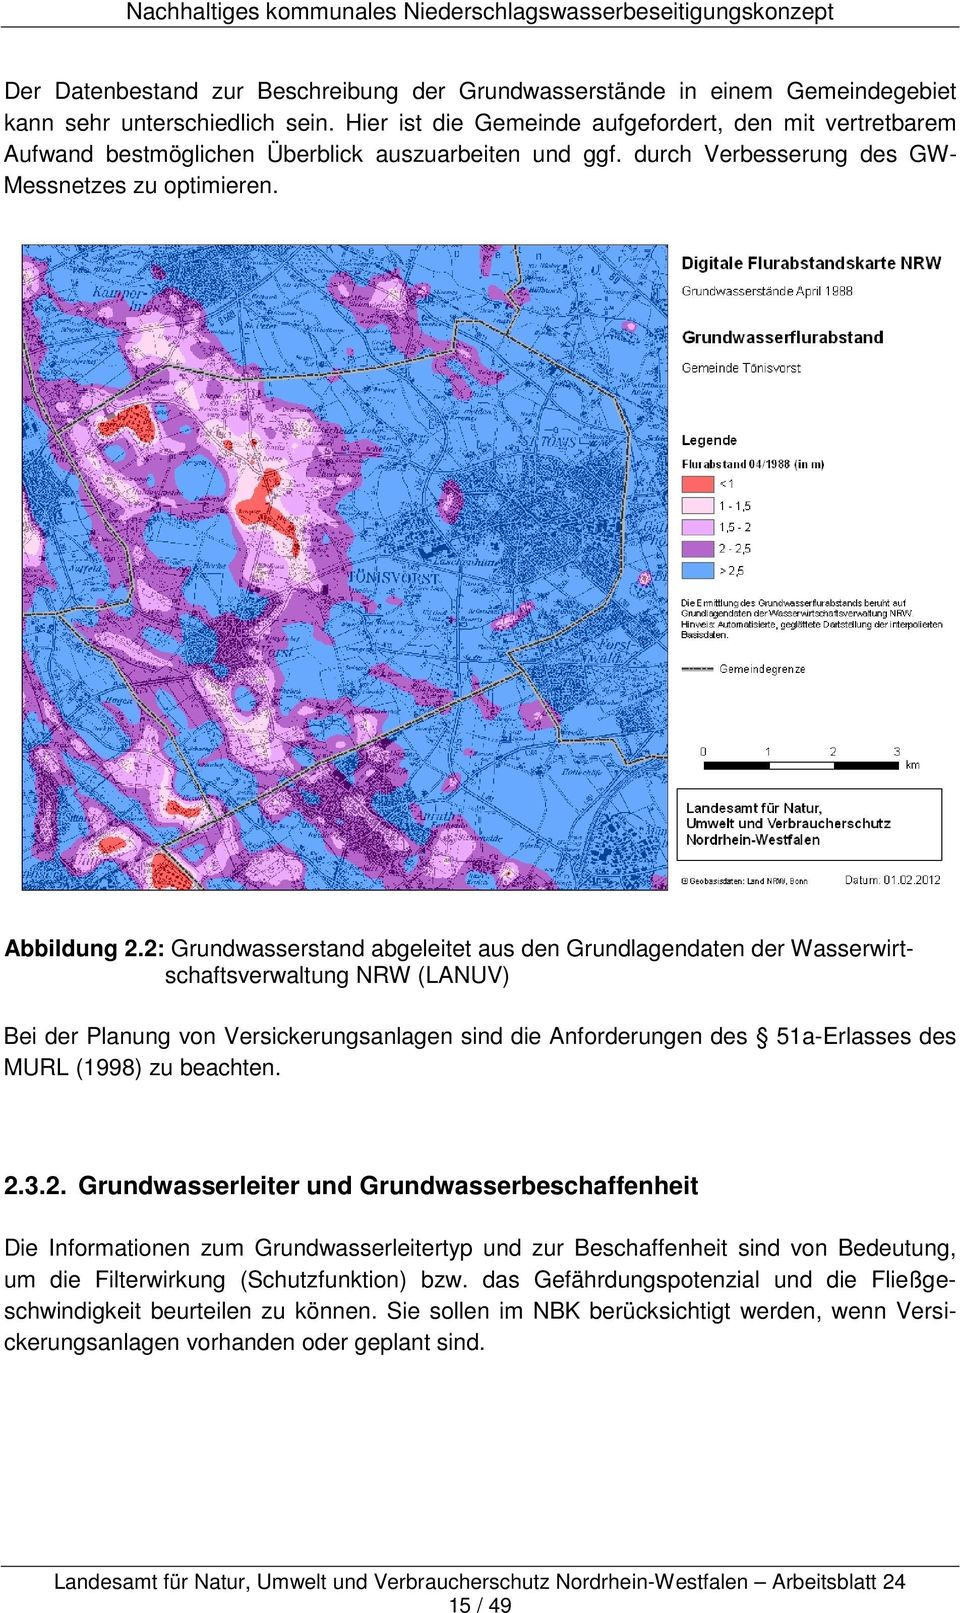 2: Grundwasserstand abgeleitet aus den Grundlagendaten der Wasserwirtschaftsverwaltung NRW (LANUV) Bei der Planung von Versickerungsanlagen sind die Anforderungen des 51a-Erlasses des MURL (1998) zu